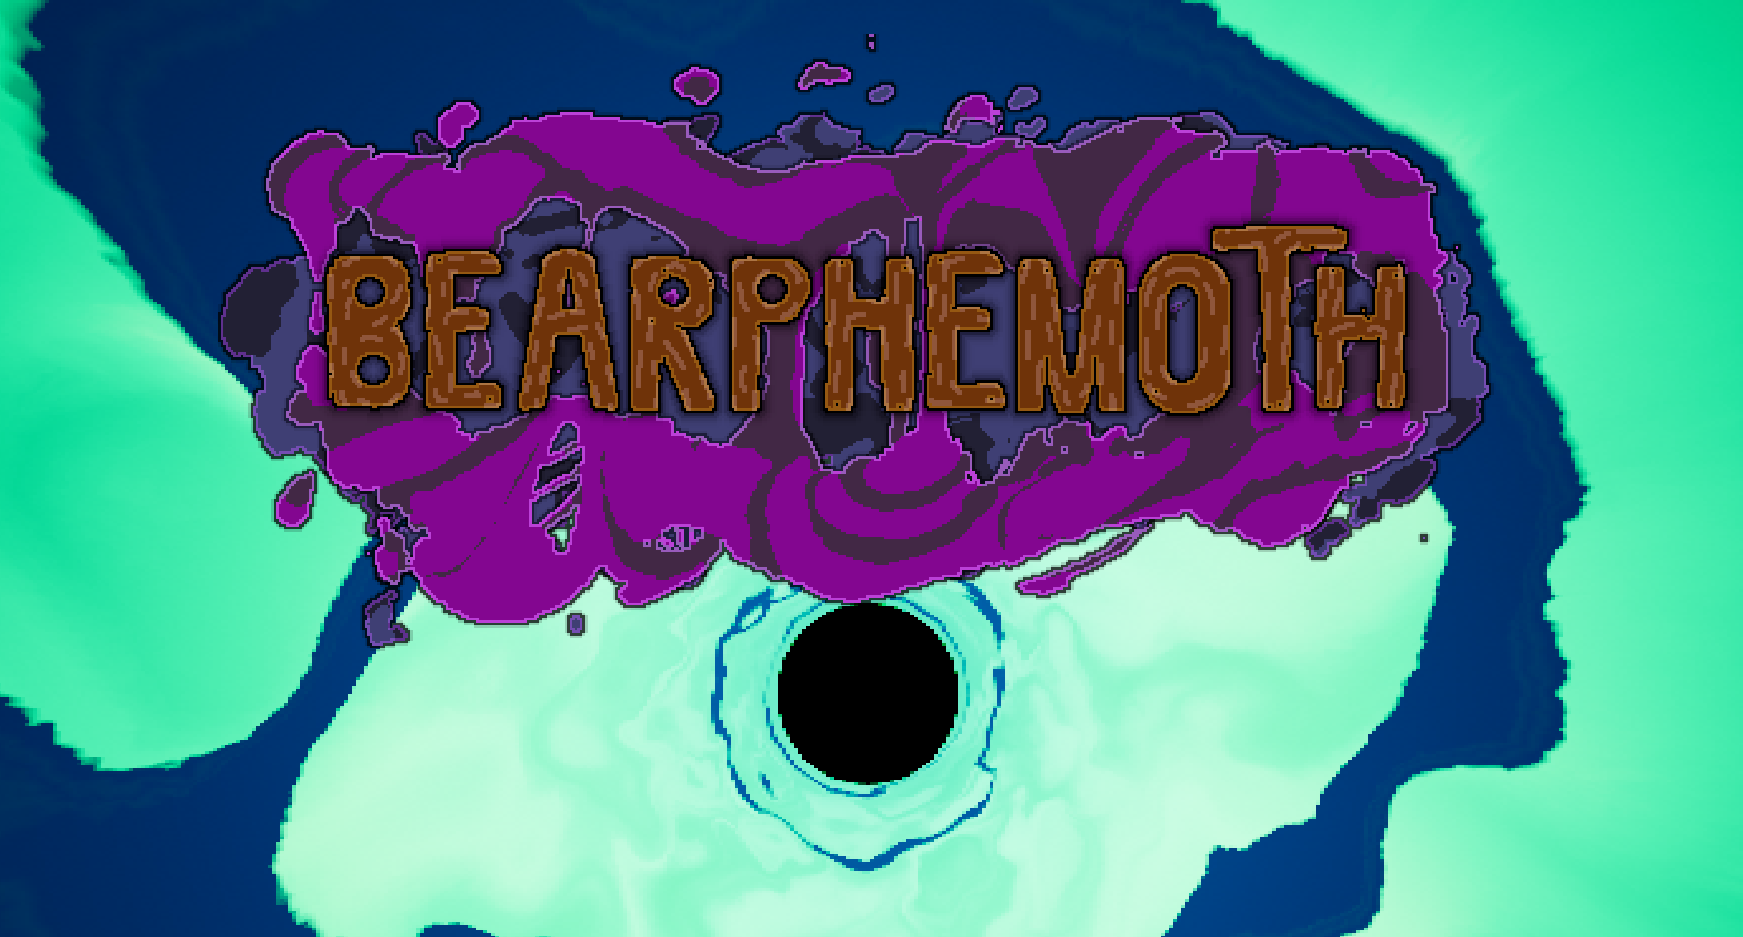 Bearphemoth